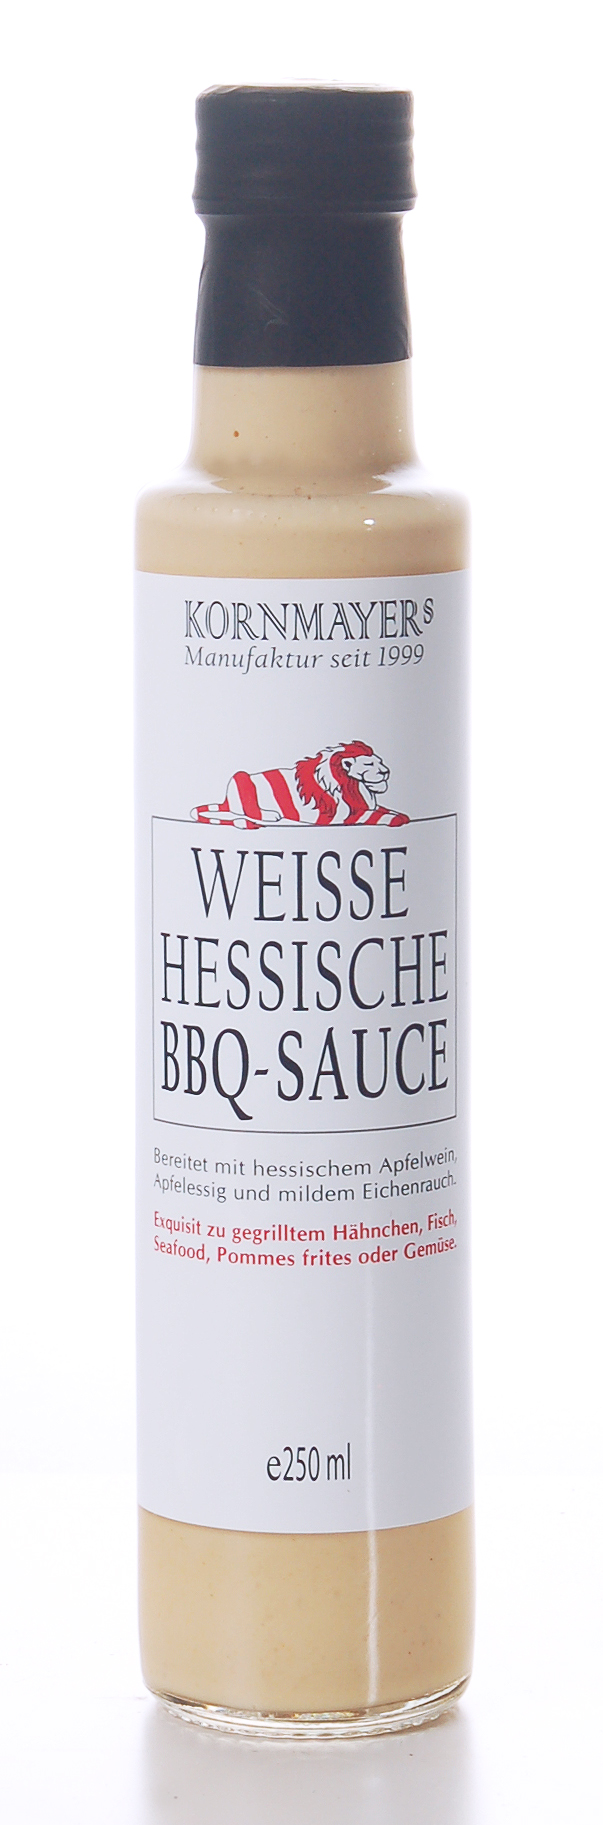 Weiße Hessische BBQ-Sauce